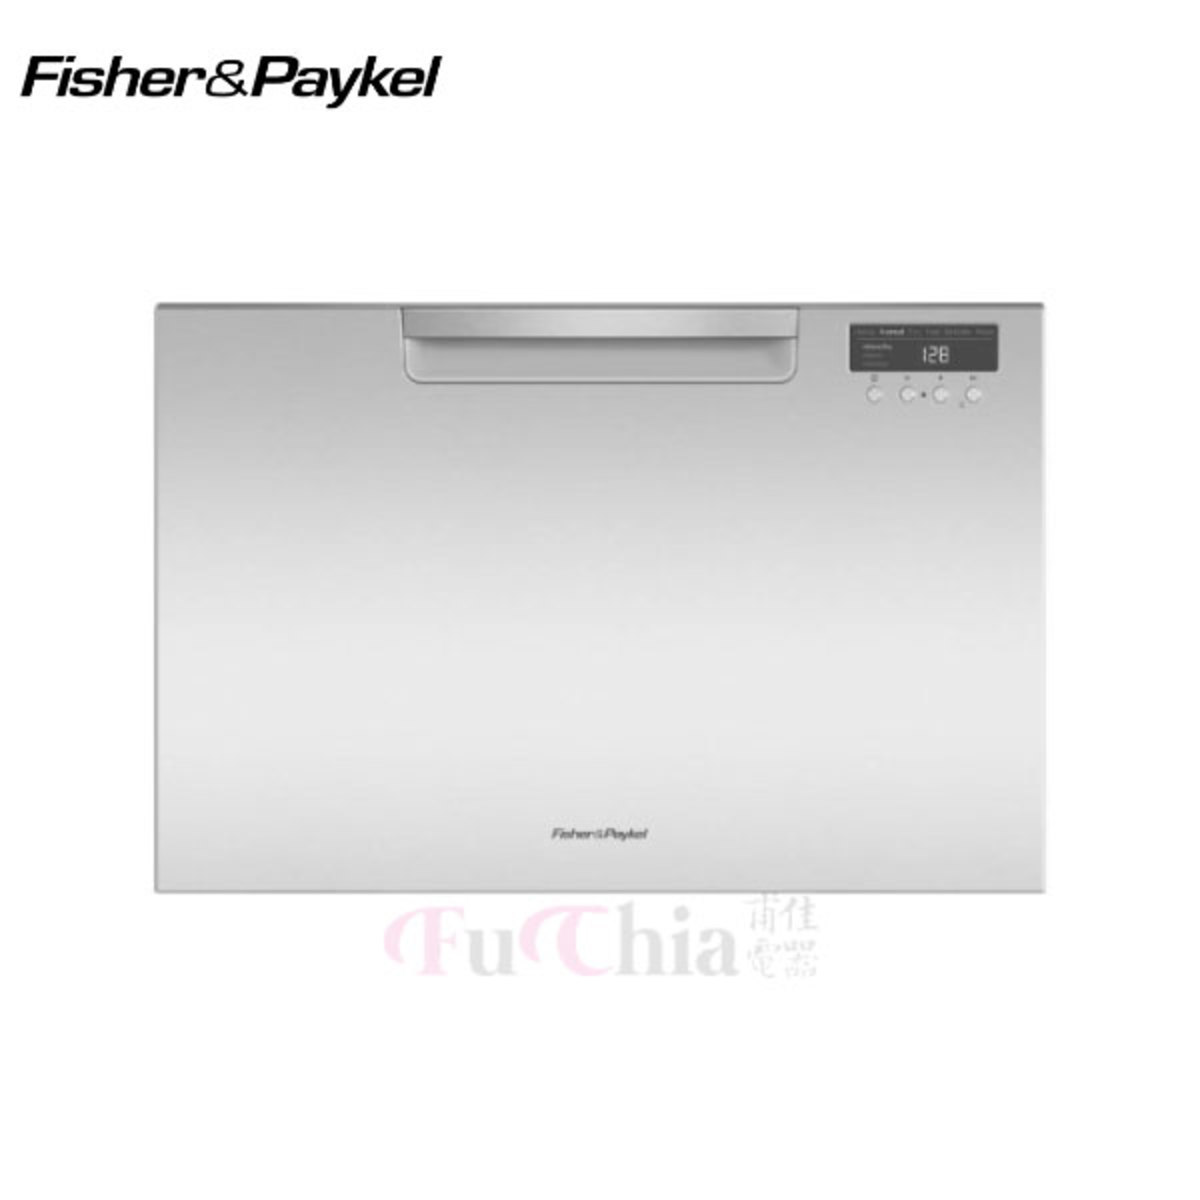 【甫佳電器】- 菲雪品克(派克魚)Fisher&Paykel 9系列 不銹鋼(加高型) 單層洗碗機 DD60SCHTX9